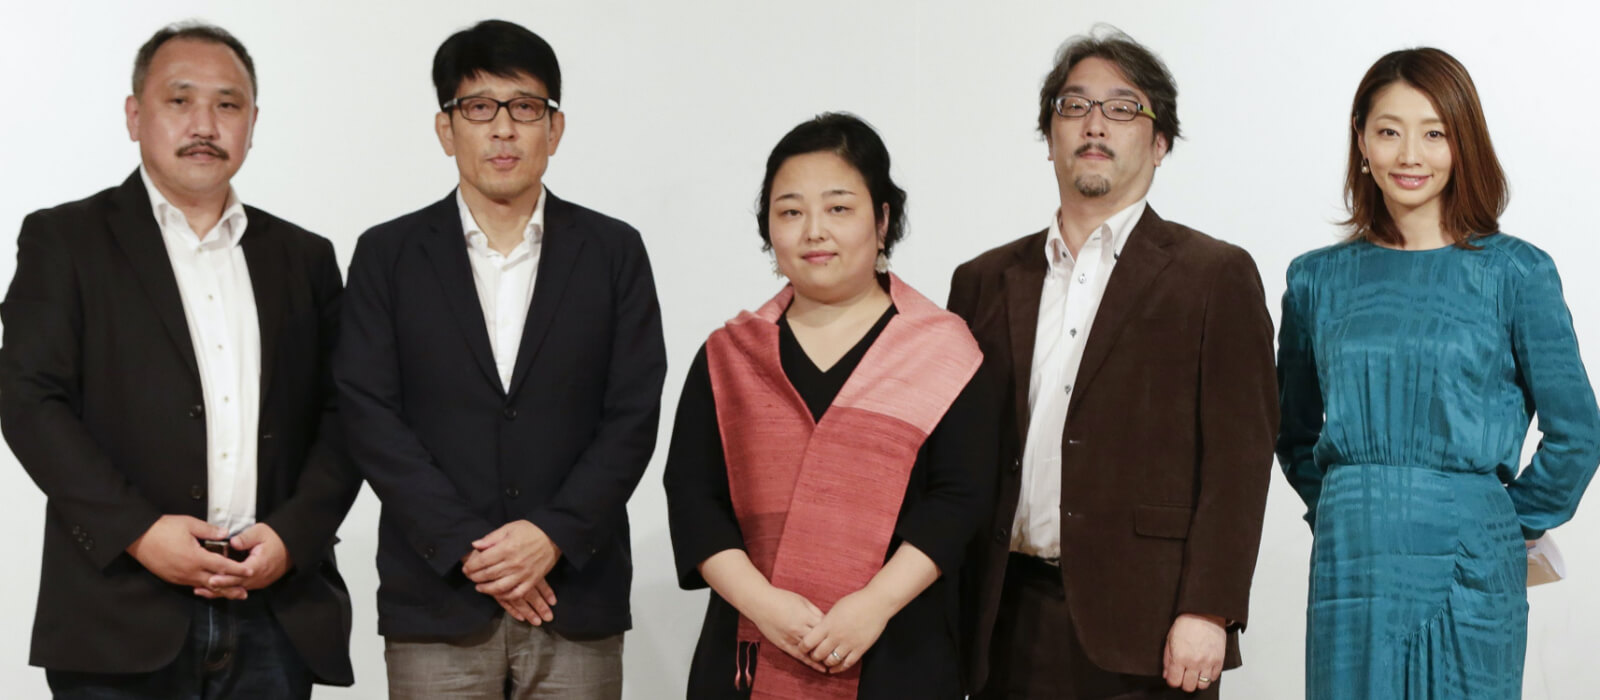 左から、岩崎賢一さん、林浩康さん、斎藤直巨さん、斎藤竜さん、真鍋かをりさん